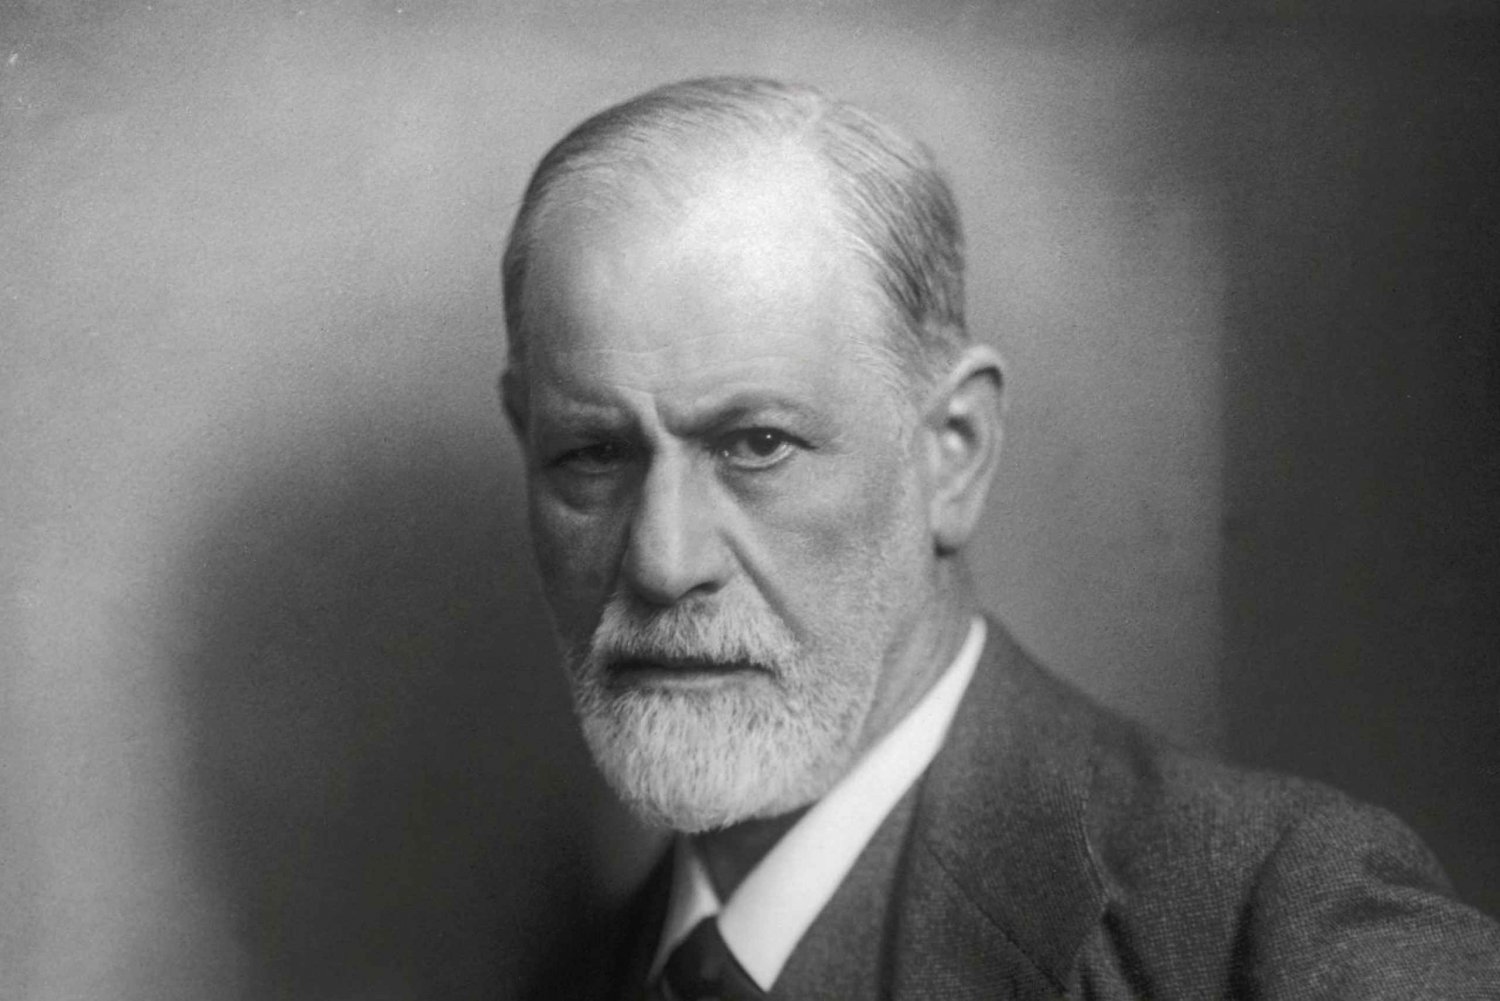 Vienne : billet pour le musée Sigmund Freud